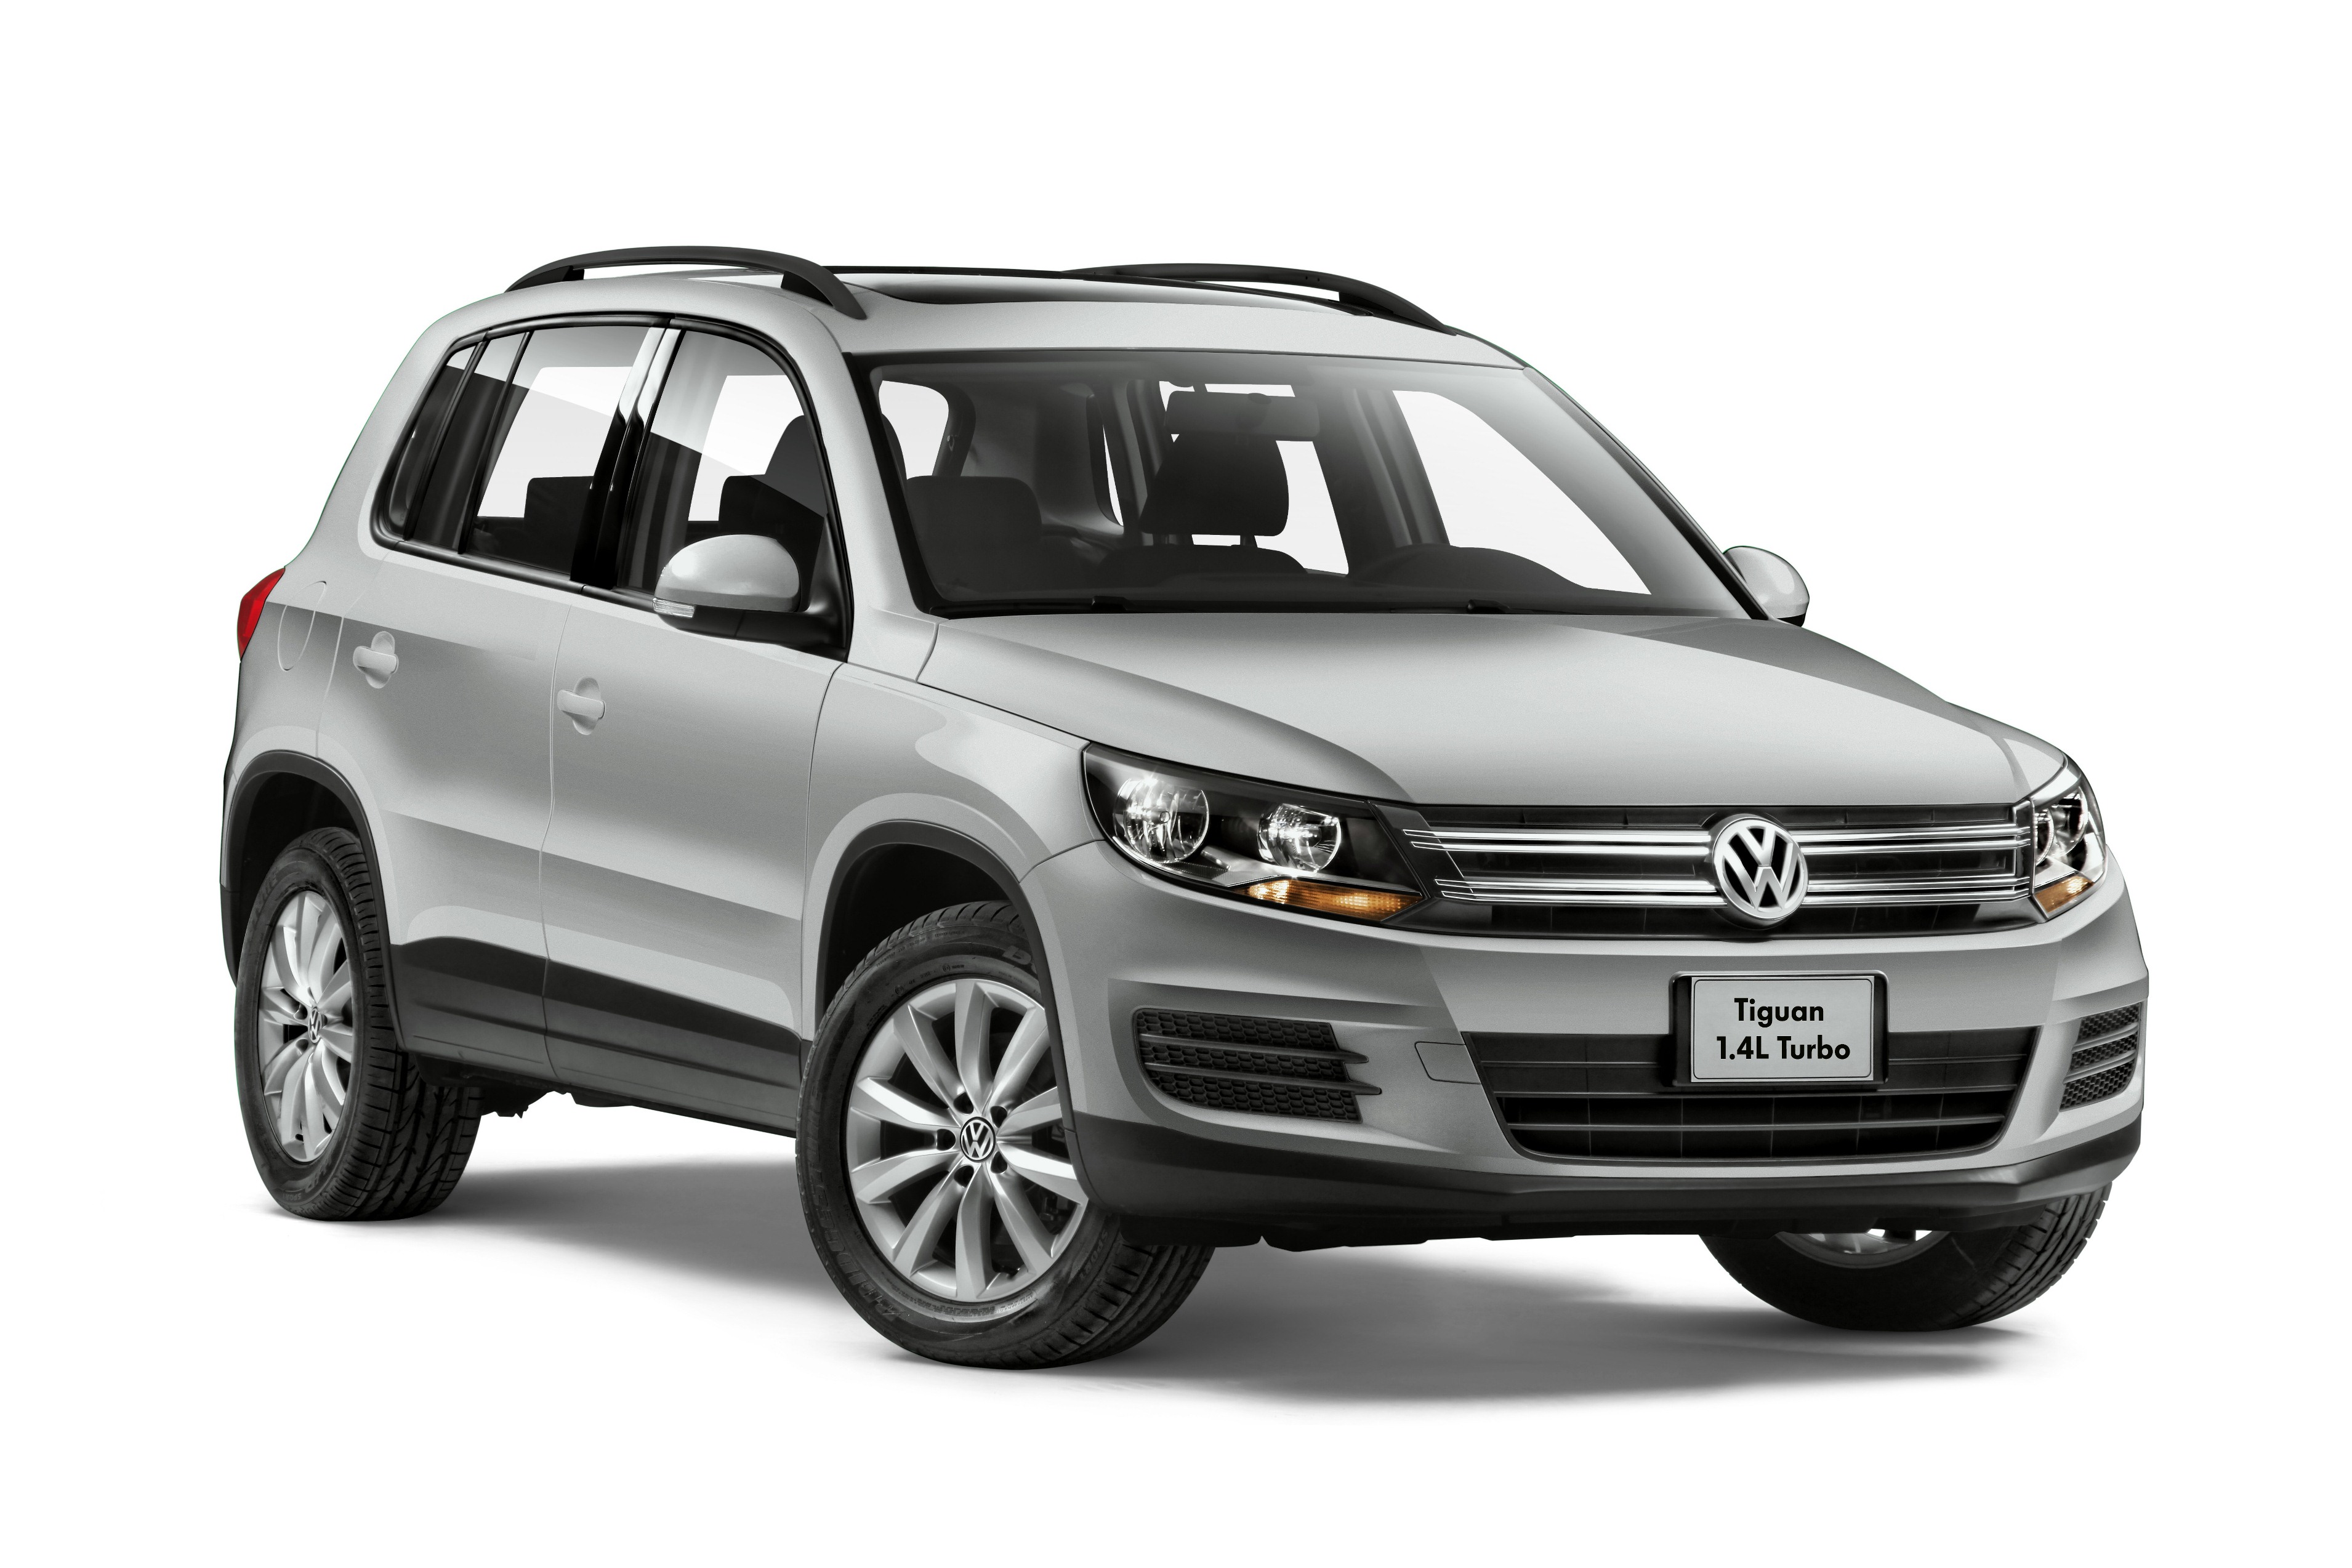 Volkswagen Tiguan Allspace exterior specifications